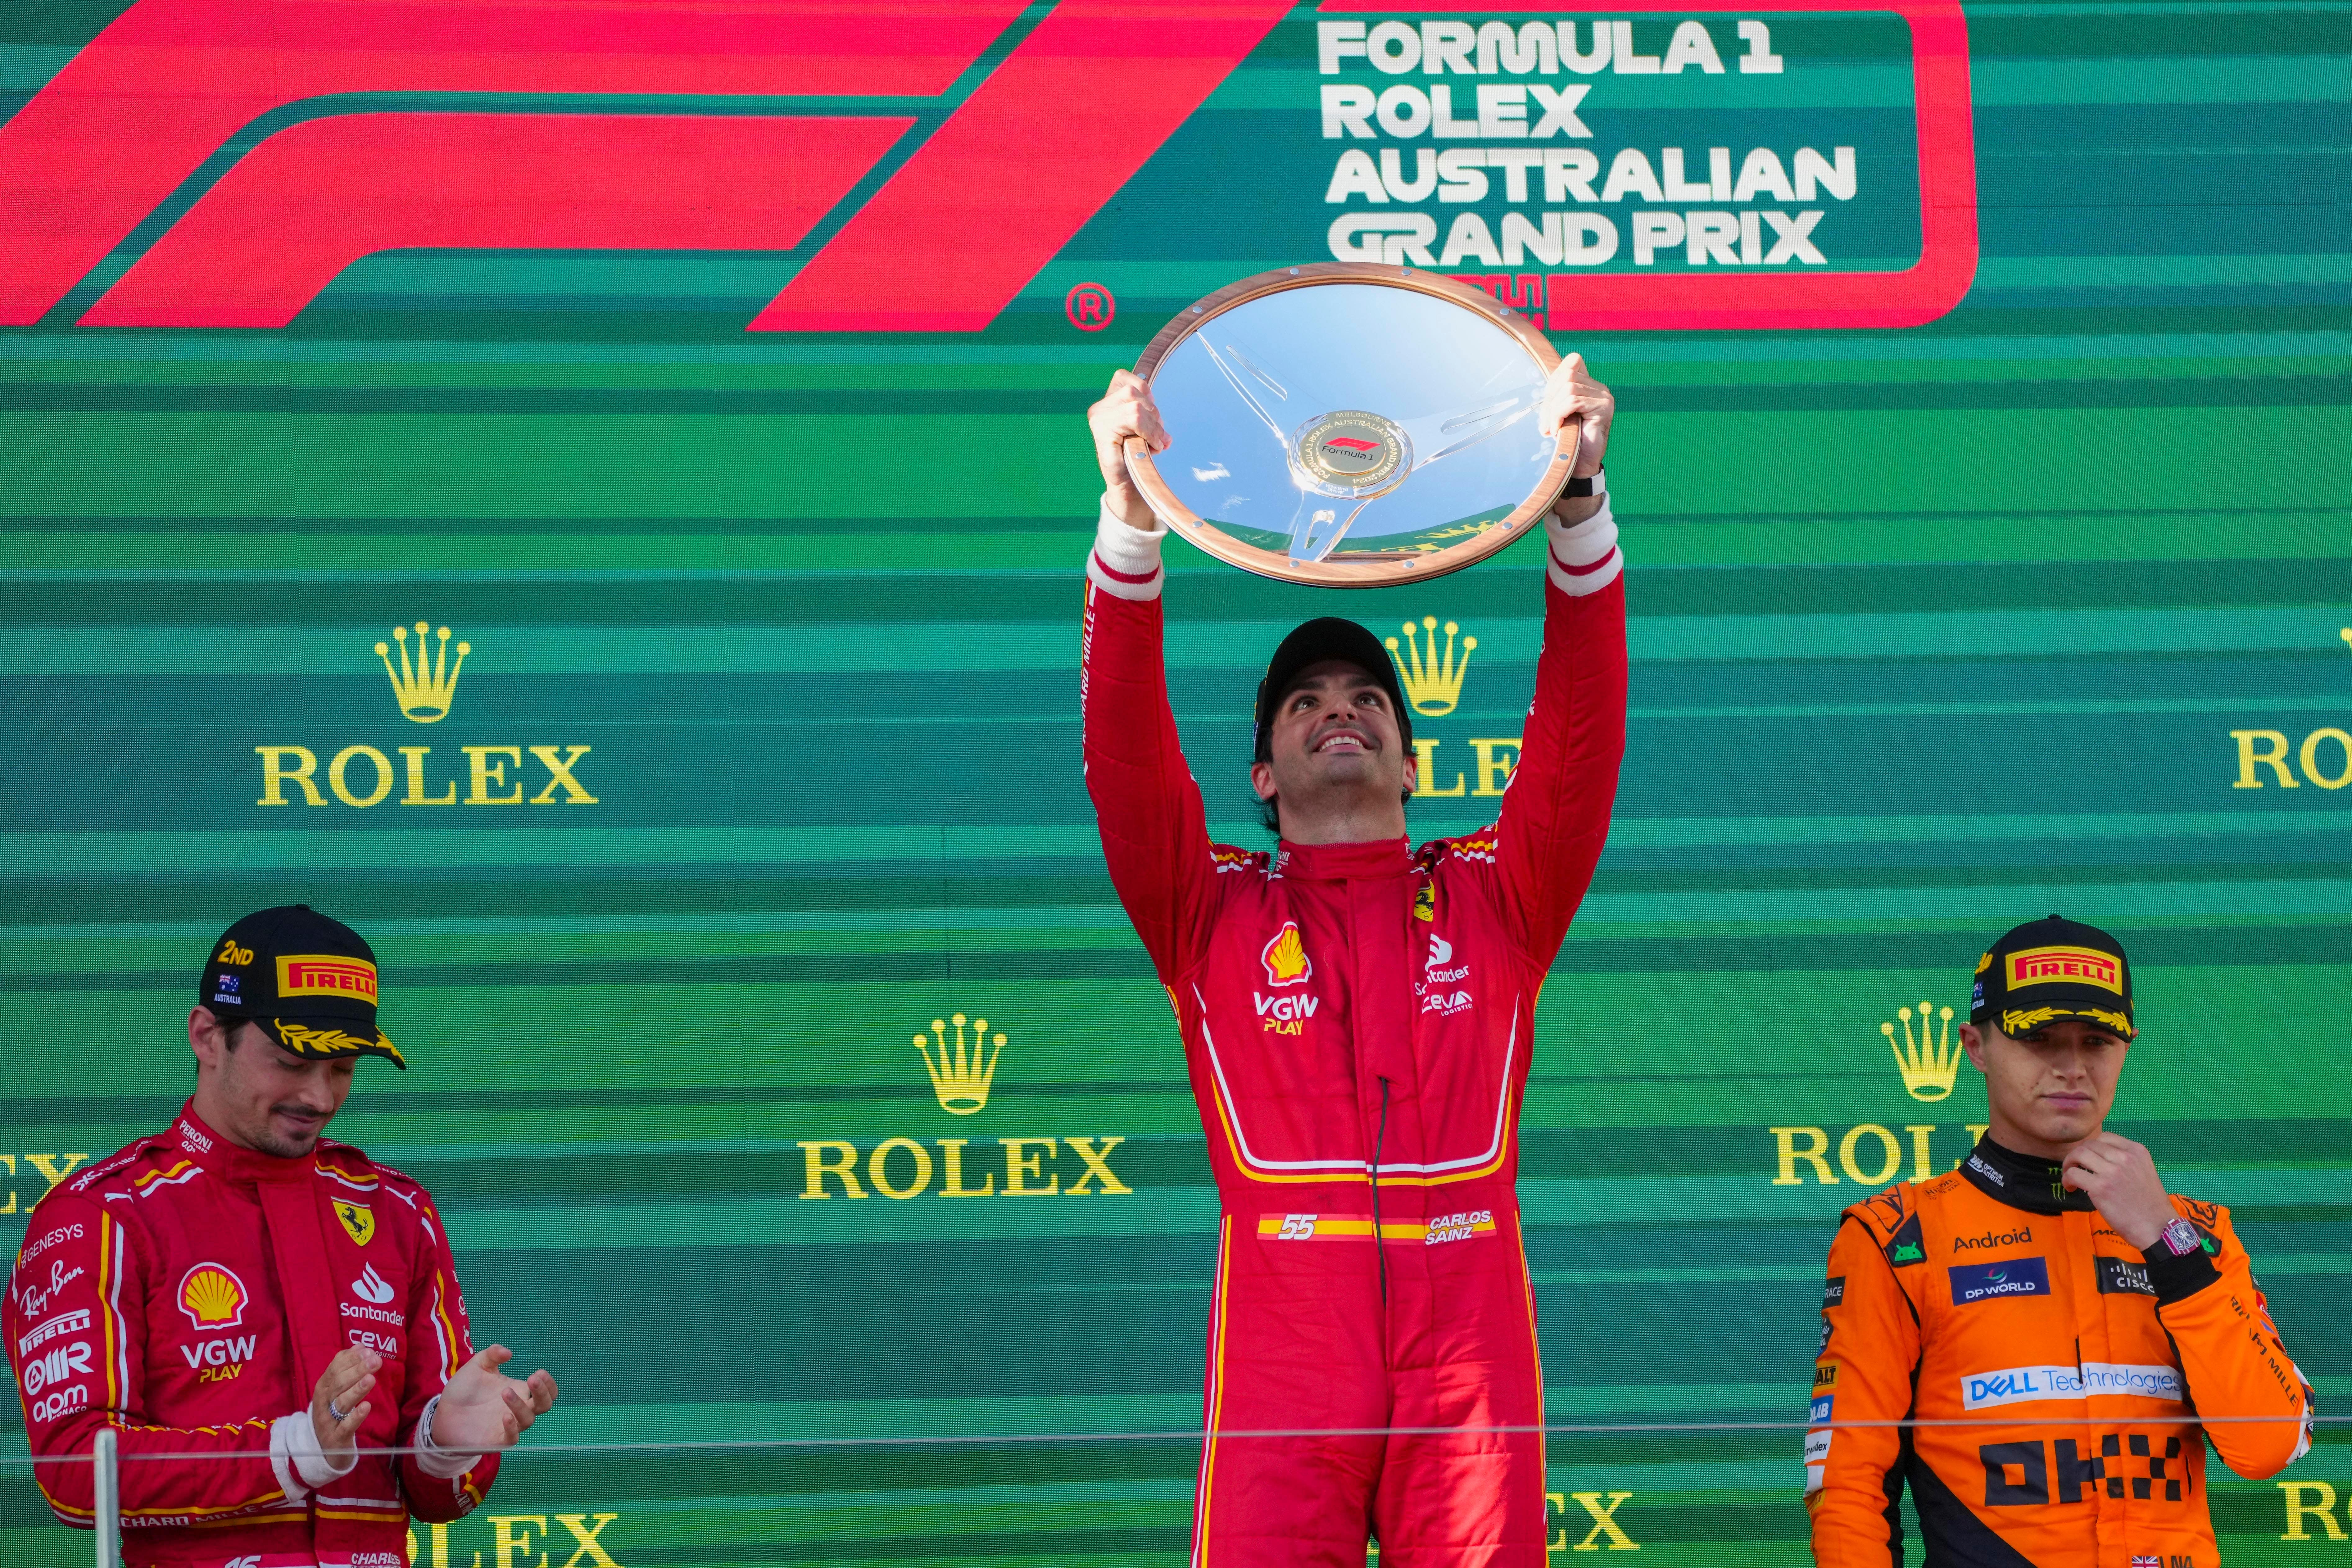 Sainz was a deserving winner in Australia on Sunday